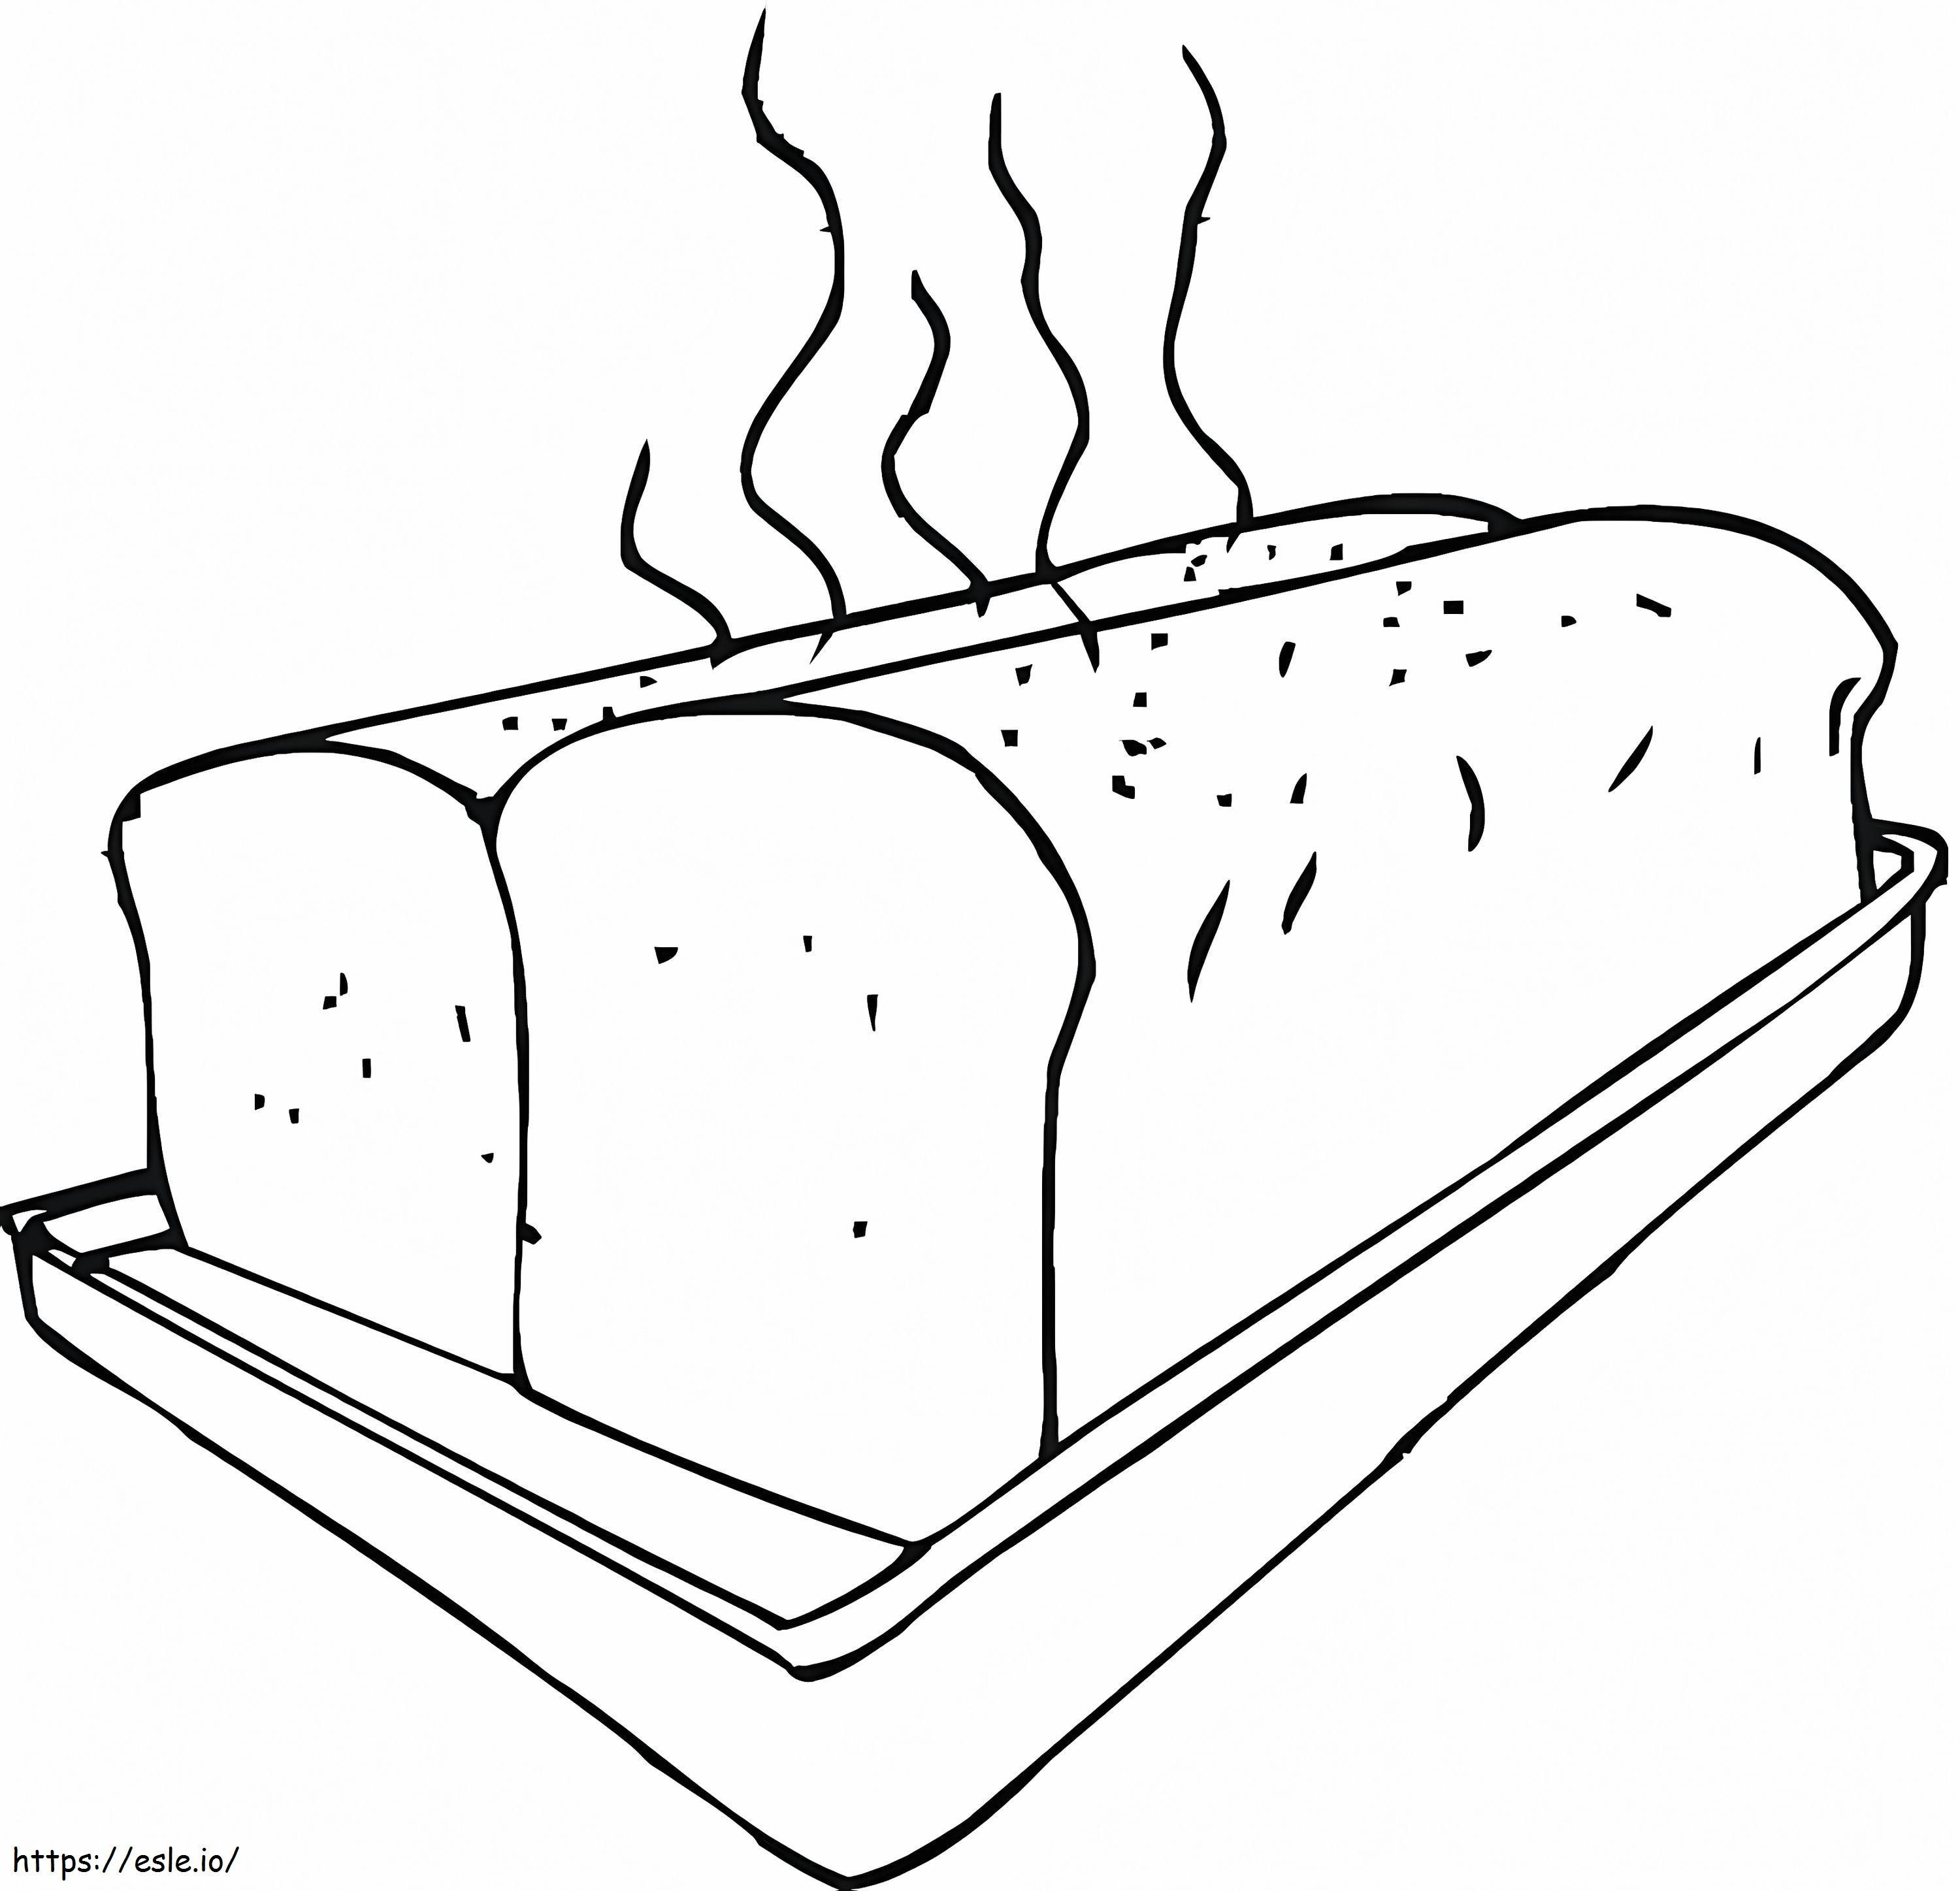 Heißes Brot ausmalbilder